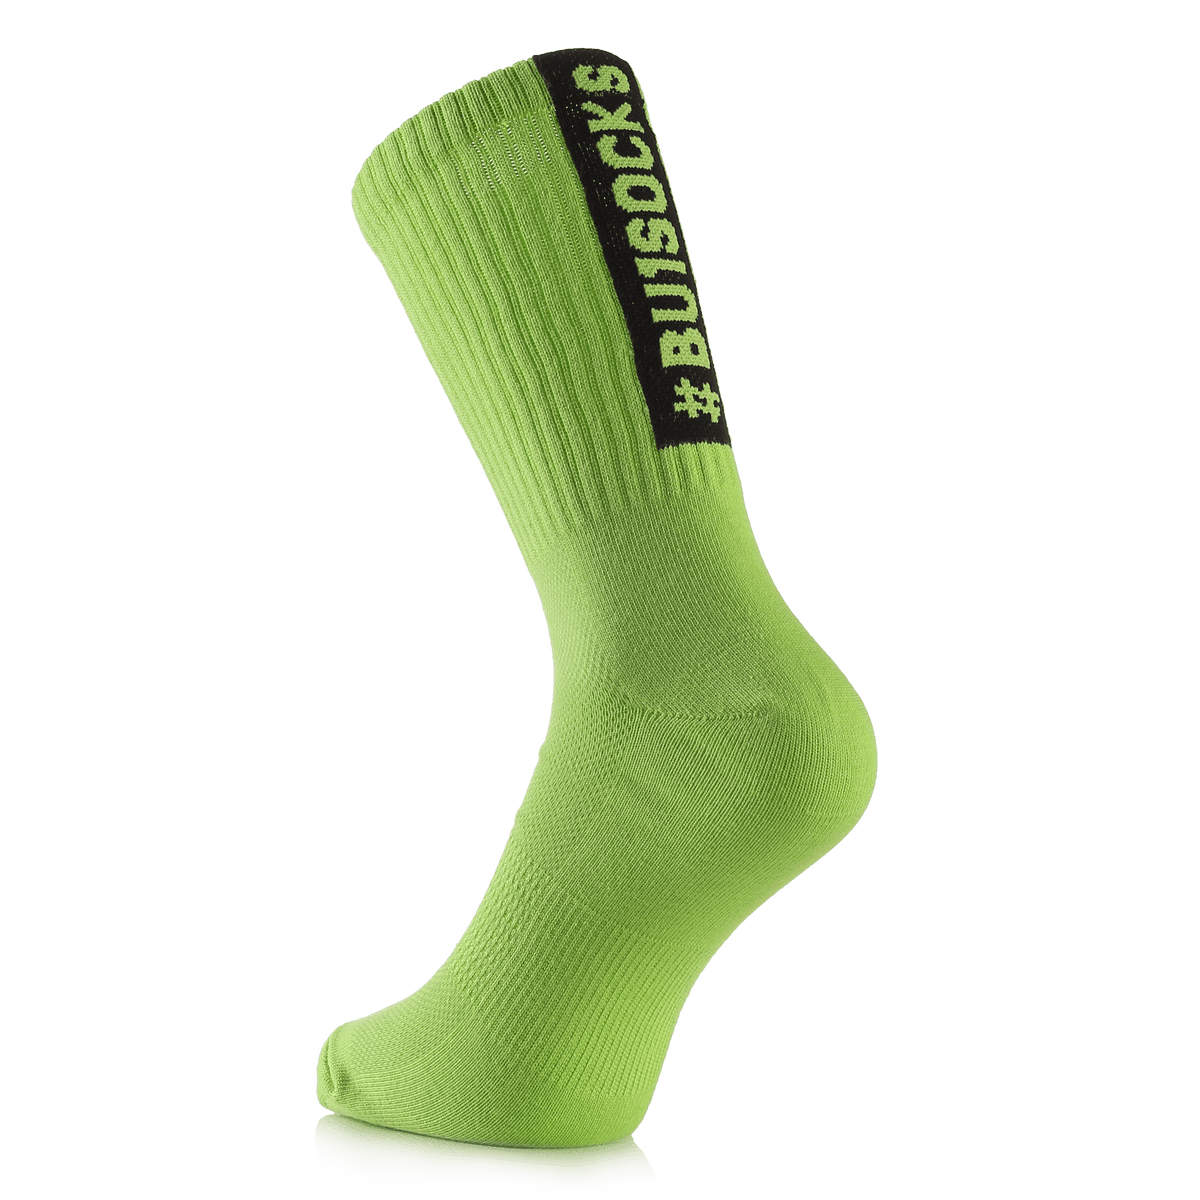 BU1 sportovní ponožky neonově zelené